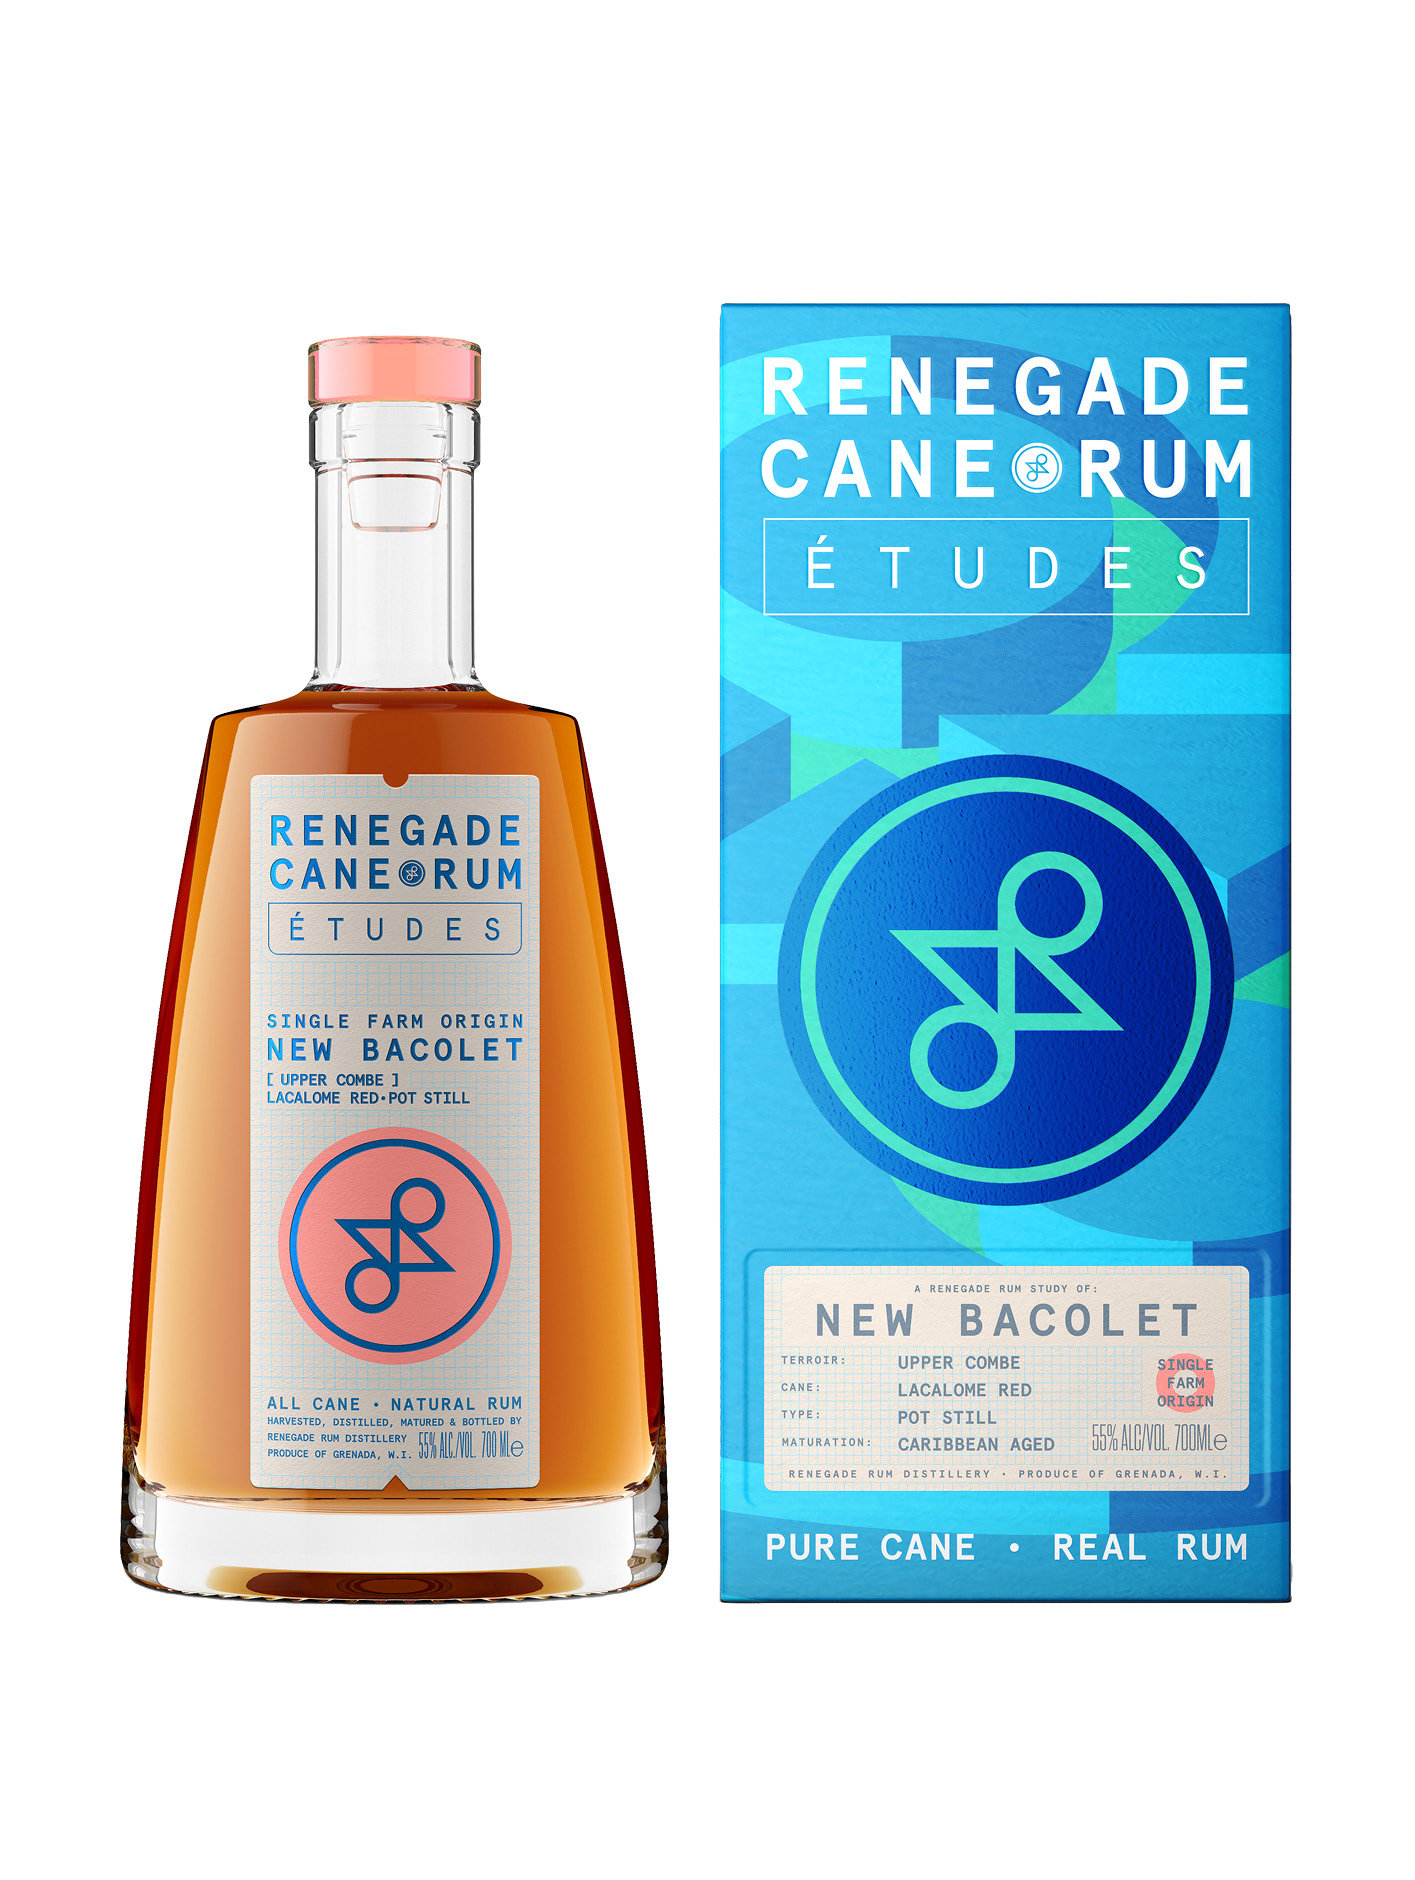 Renegade Cane Rum Études